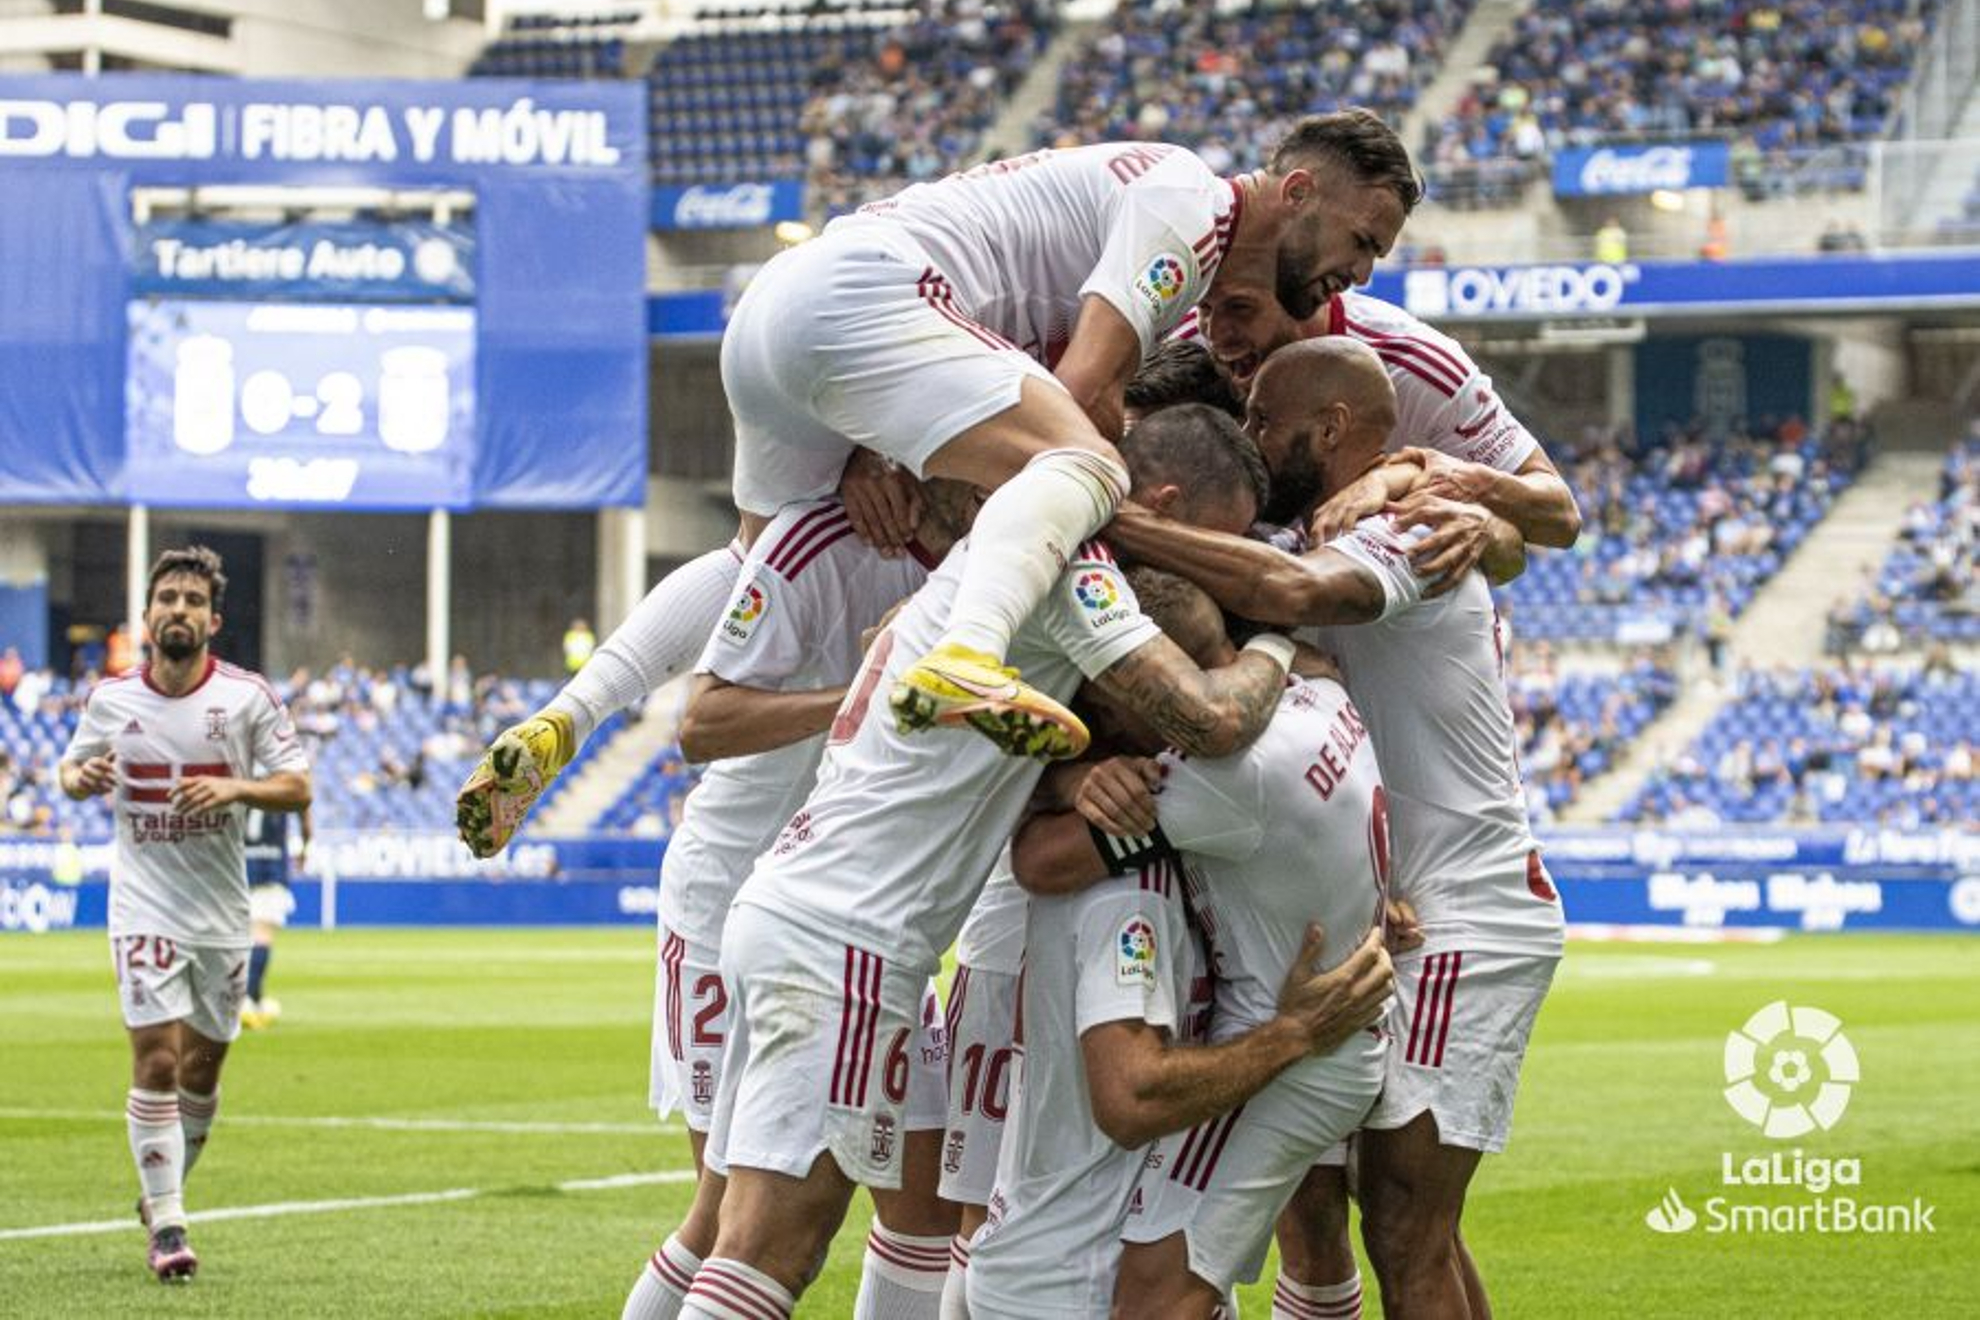 Los jugadores del Cartagena celebrando uno de los goles de la tarde / LA LIGA